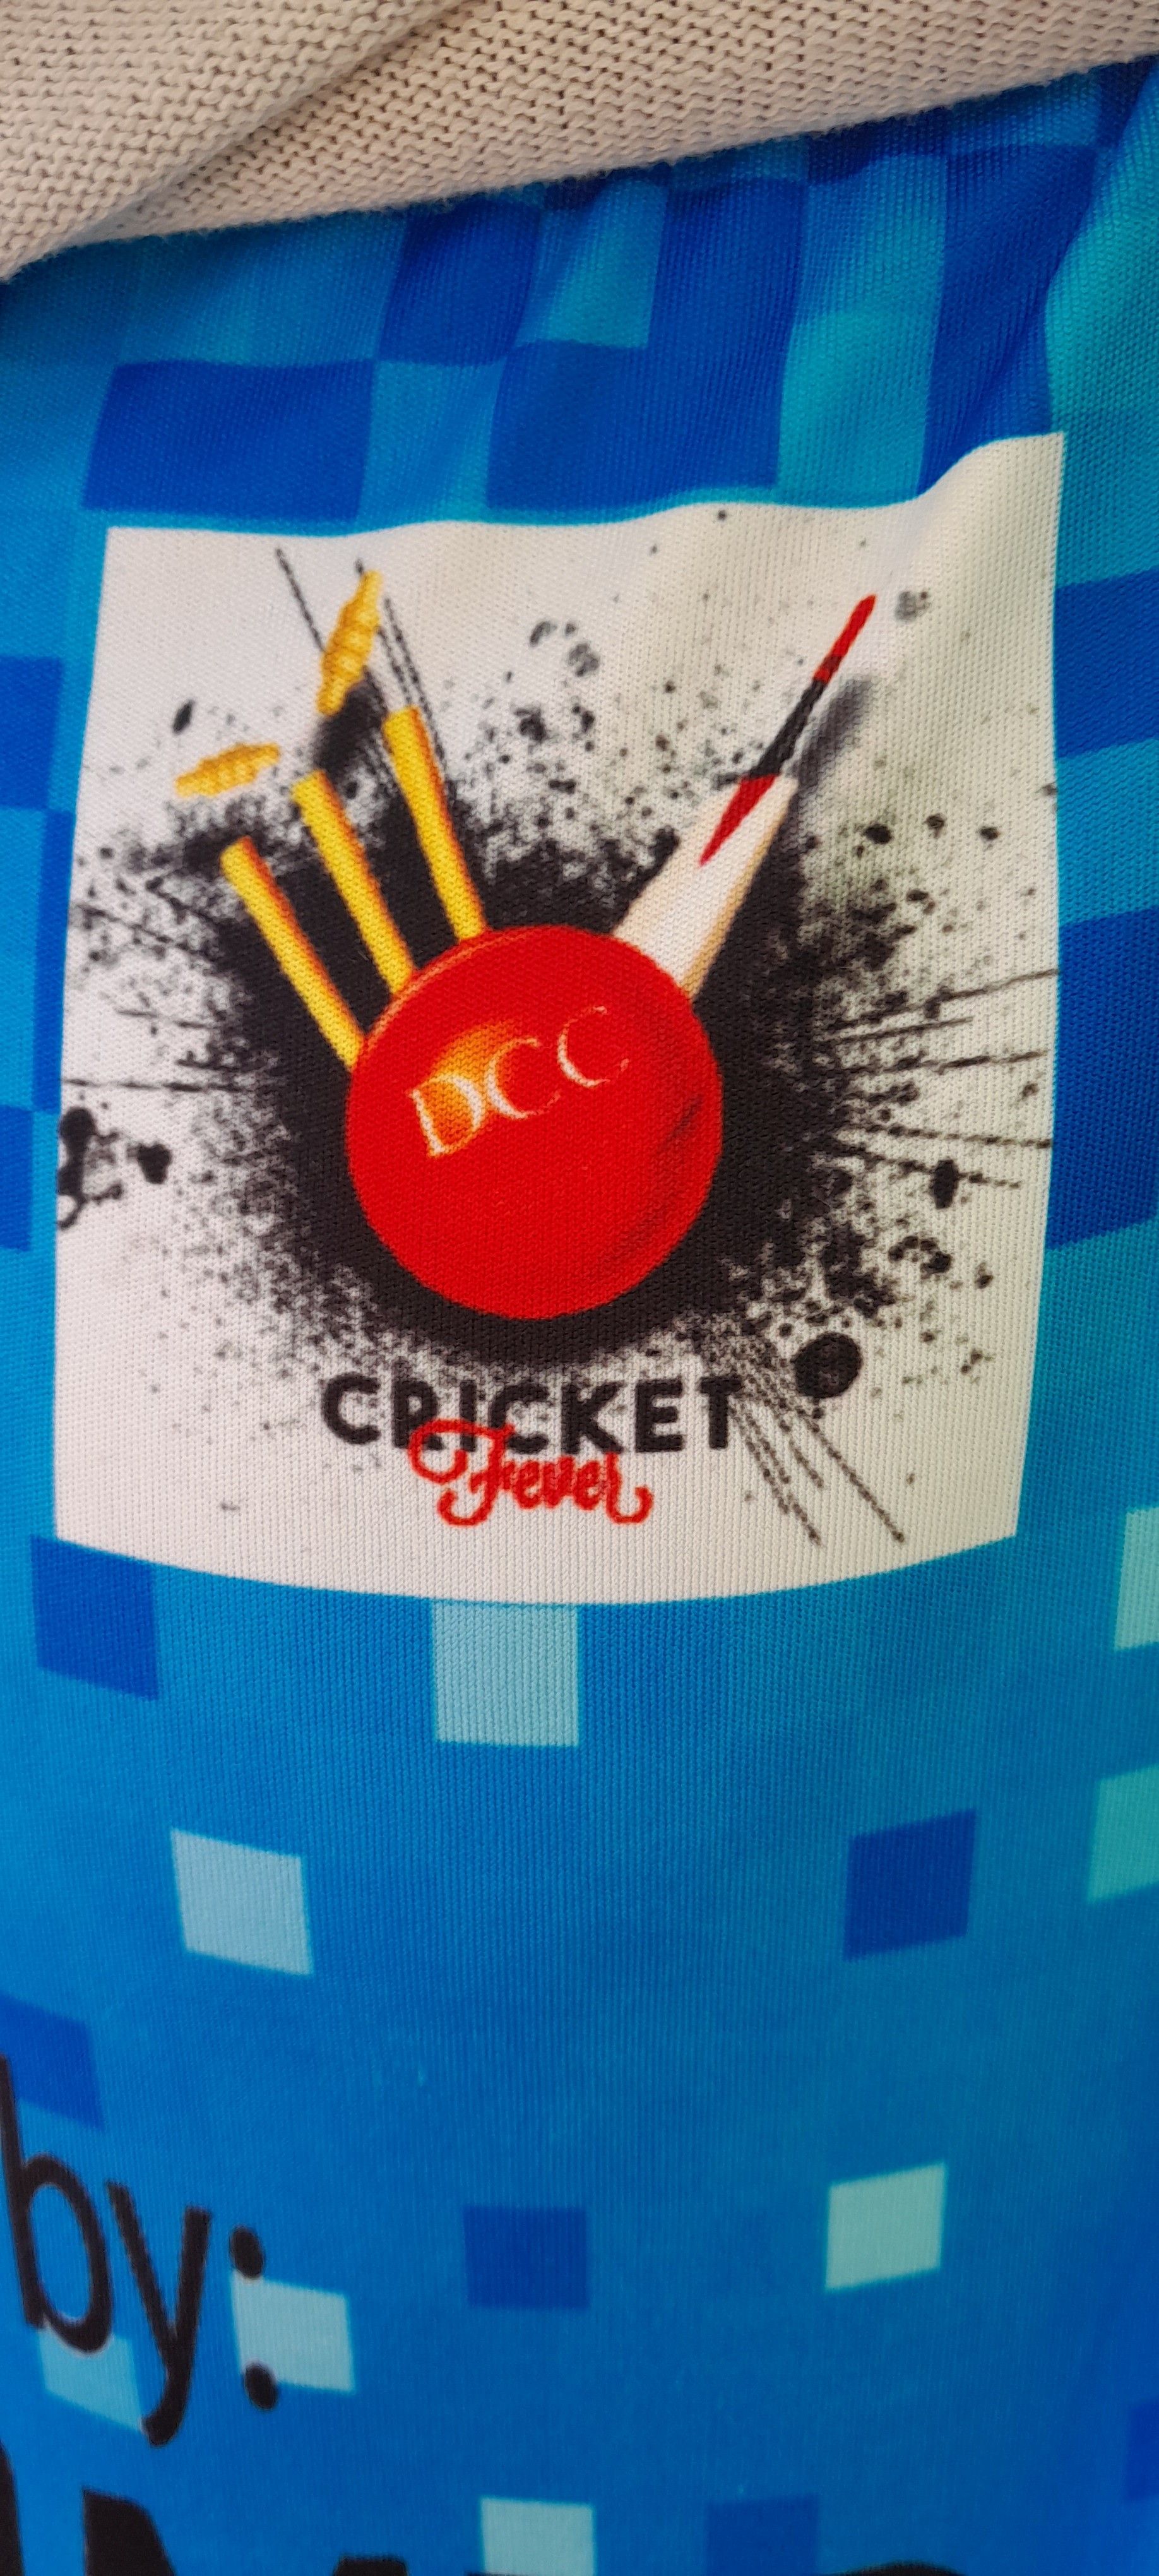 Dorgabazar Cricket Club